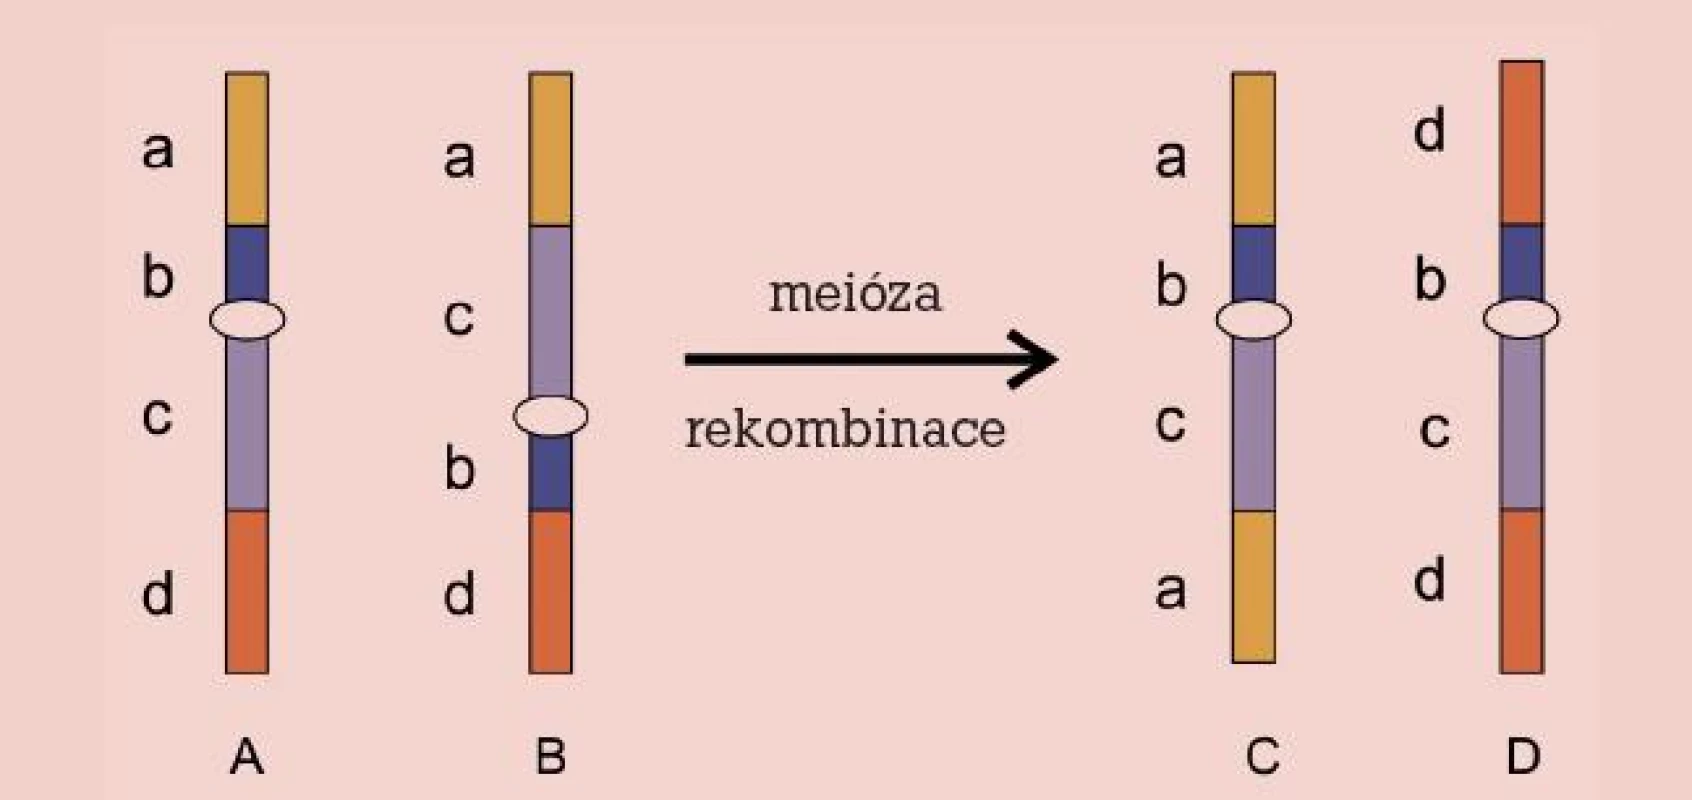 Inverze. Chromozom normální (A), invertovaný (B) a rekombinovaný (C, D).